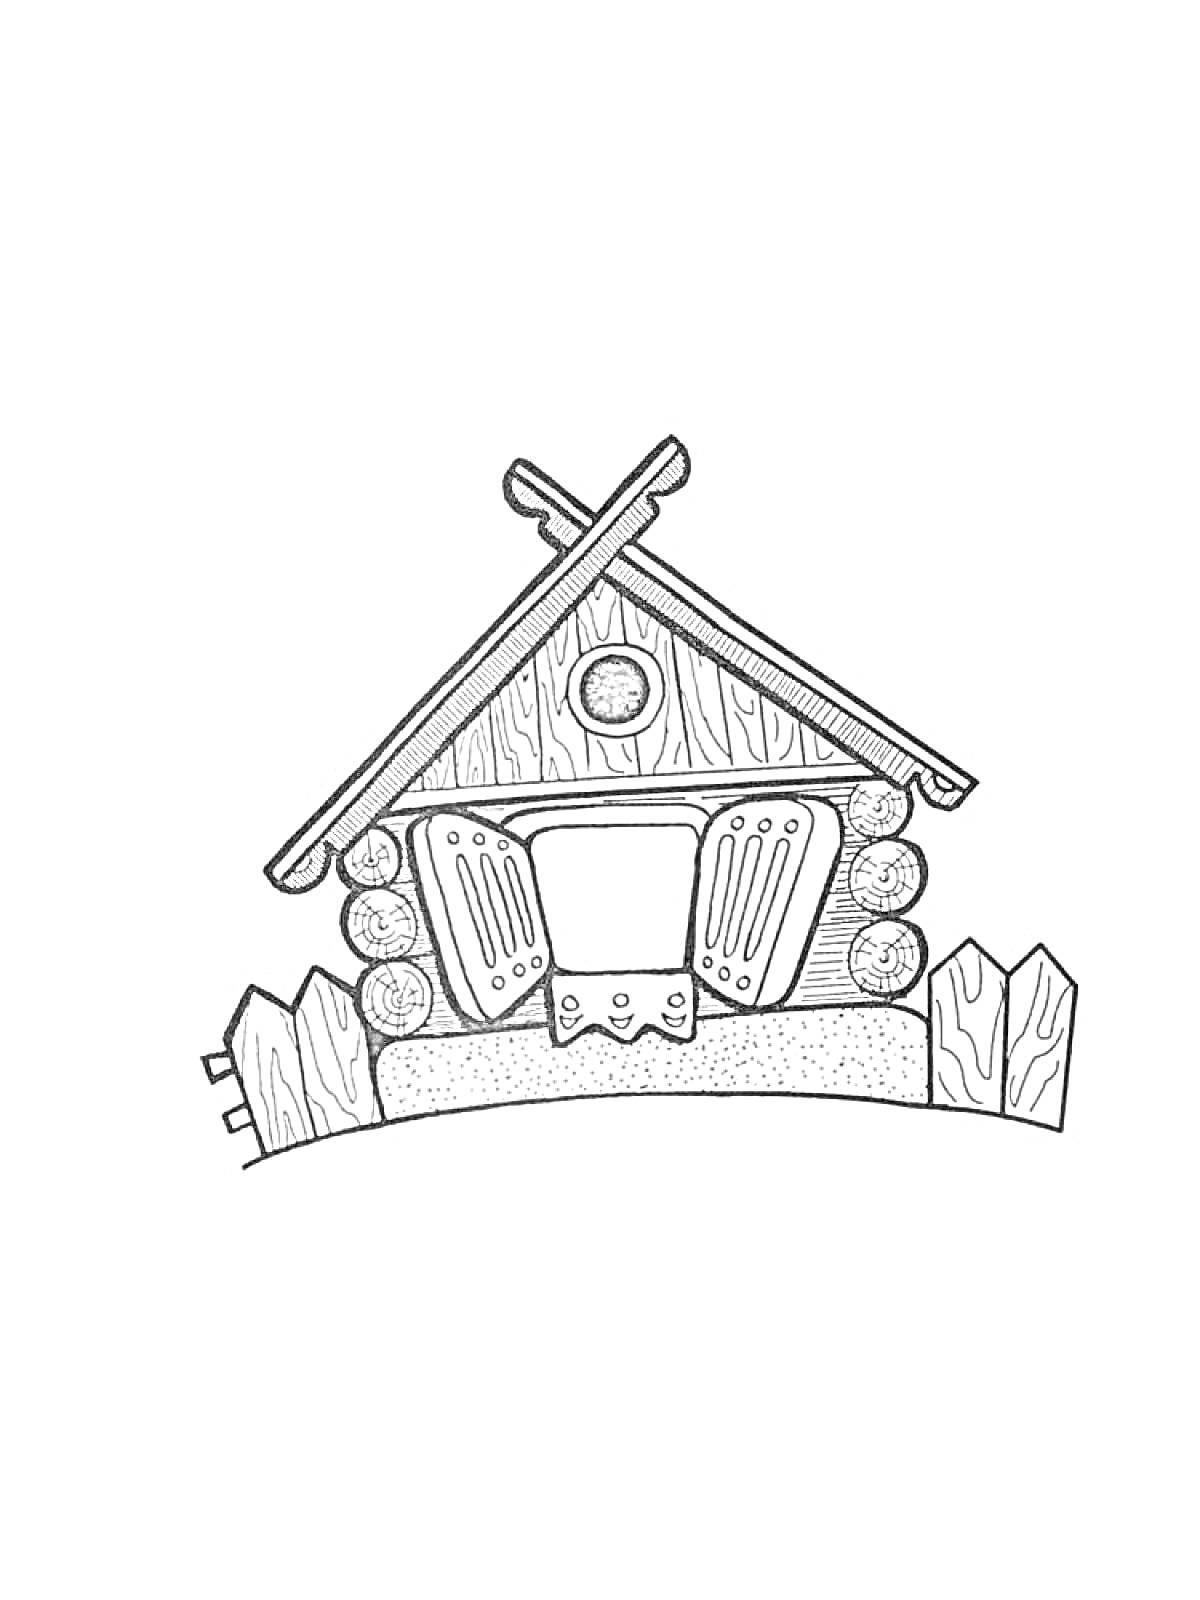 Изба с деревянными бревнами, двускатной крышей, открытыми ставнями на окне и забором